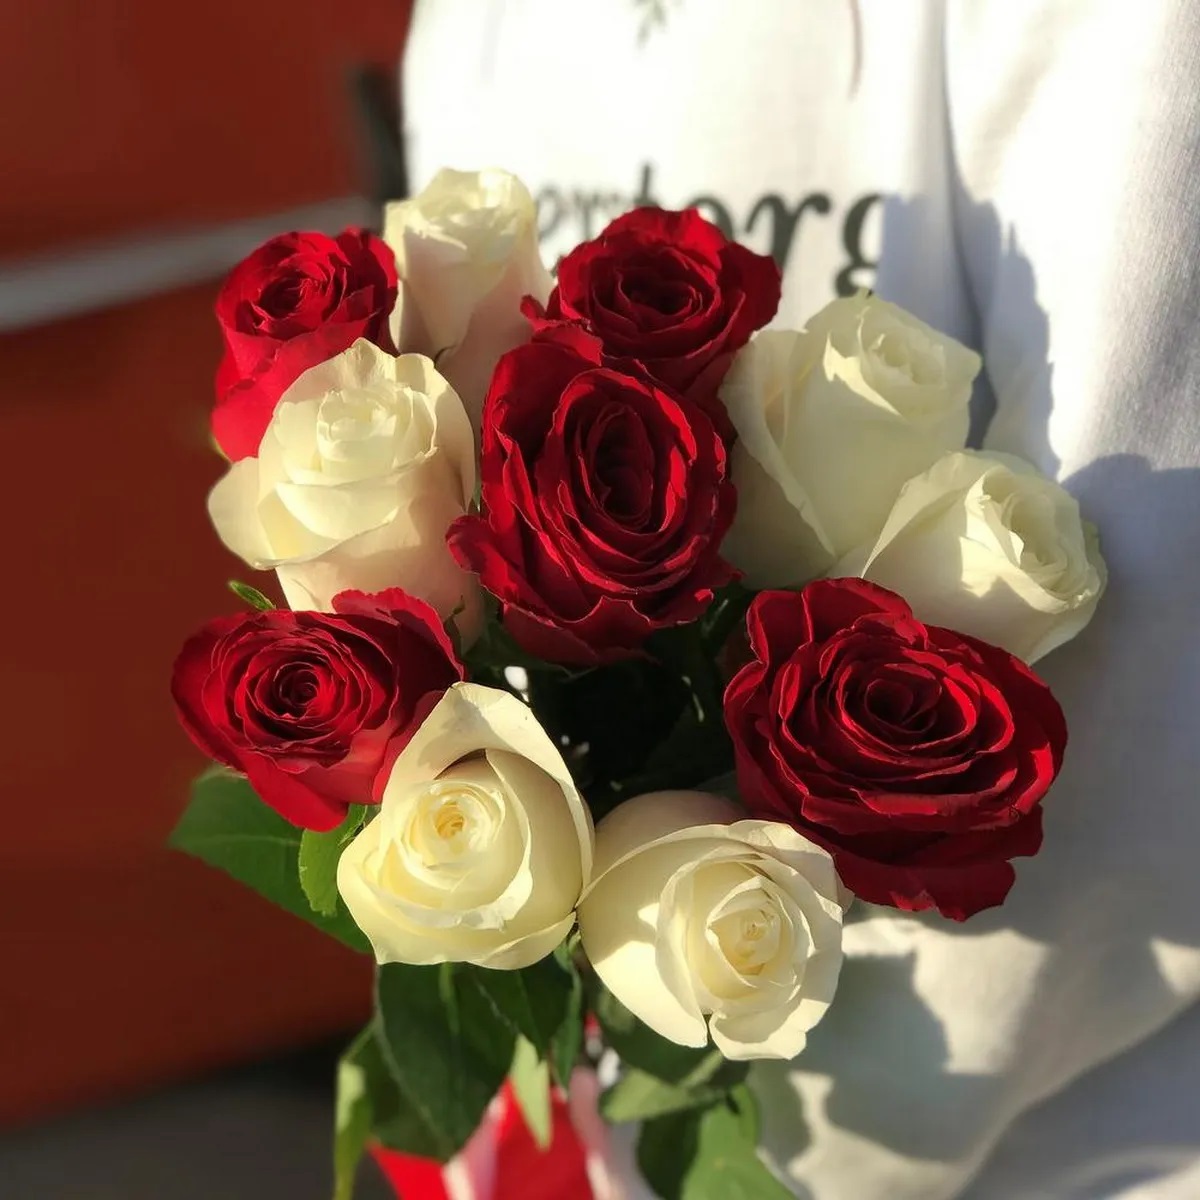 Vi rose. Букет красных роз. Букет из белых и красных роз. Букетиз РЛЗ белых и красных. Розы красные и белые.